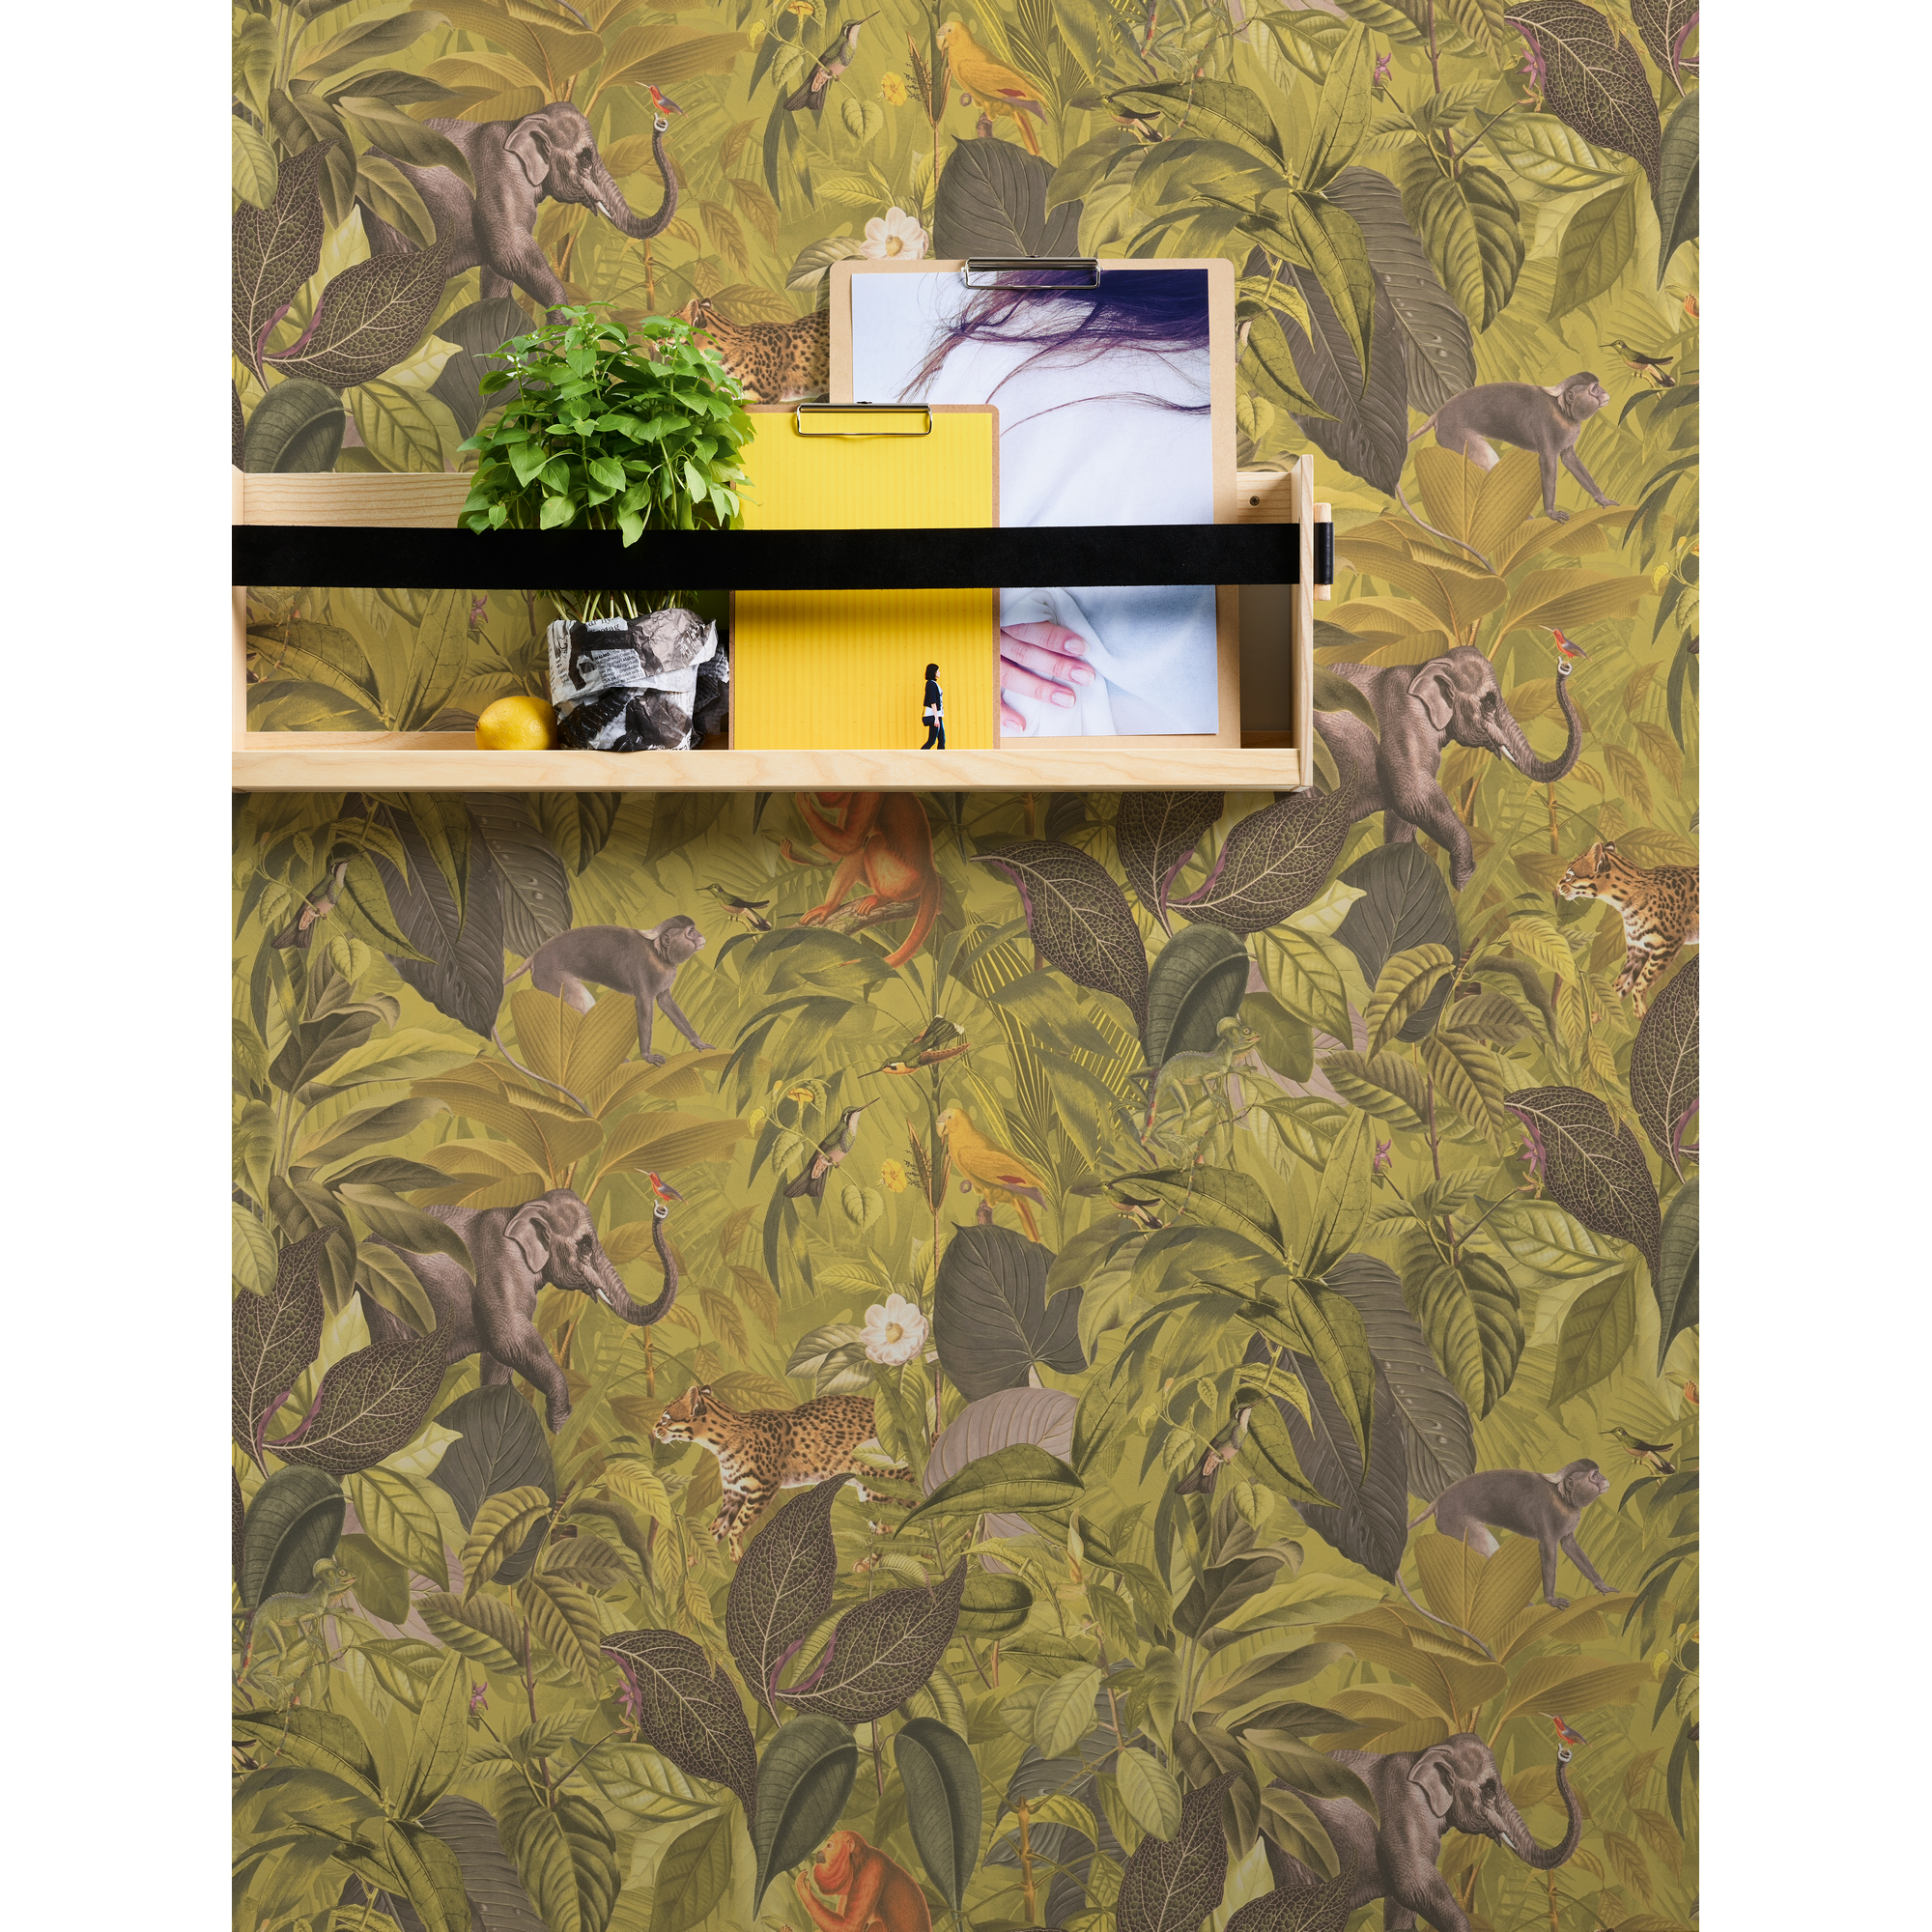 Vliestapete 'Pint Walls' Dschungel grün/braun 10,05 x 0,53 m + product picture